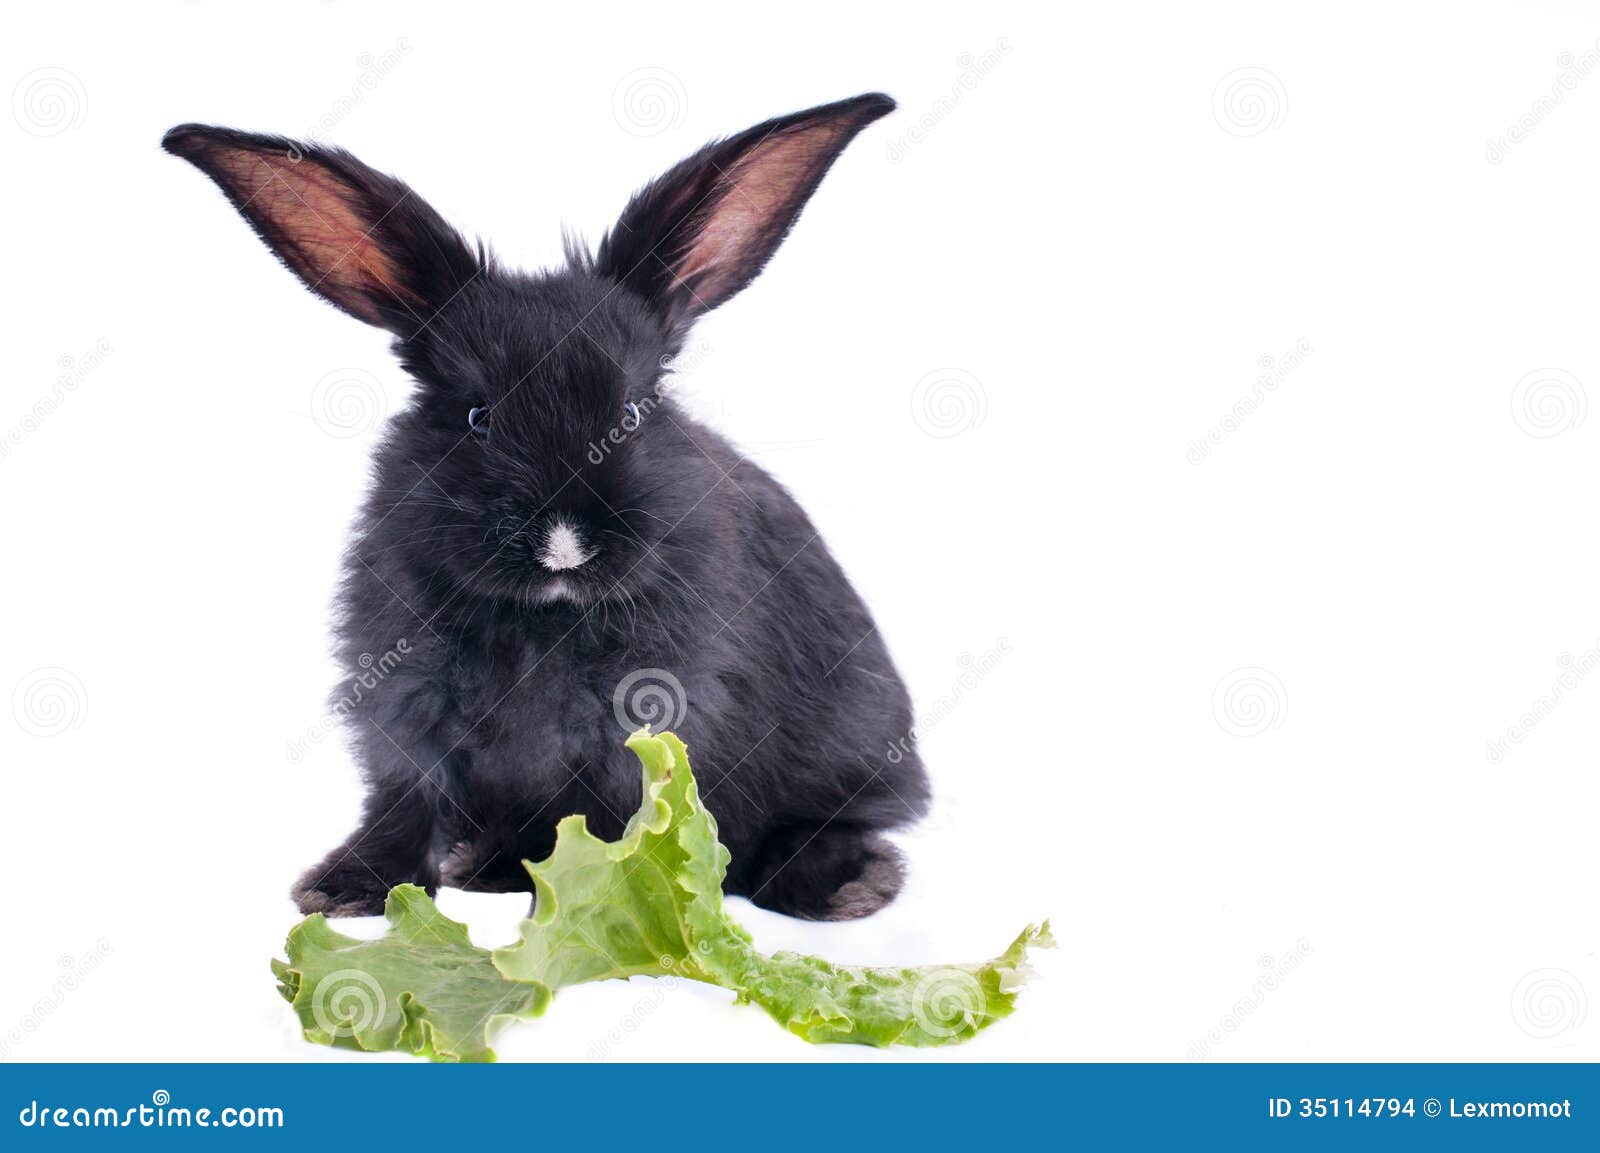 你了解兔子这种动物吗？ - 兔子百科